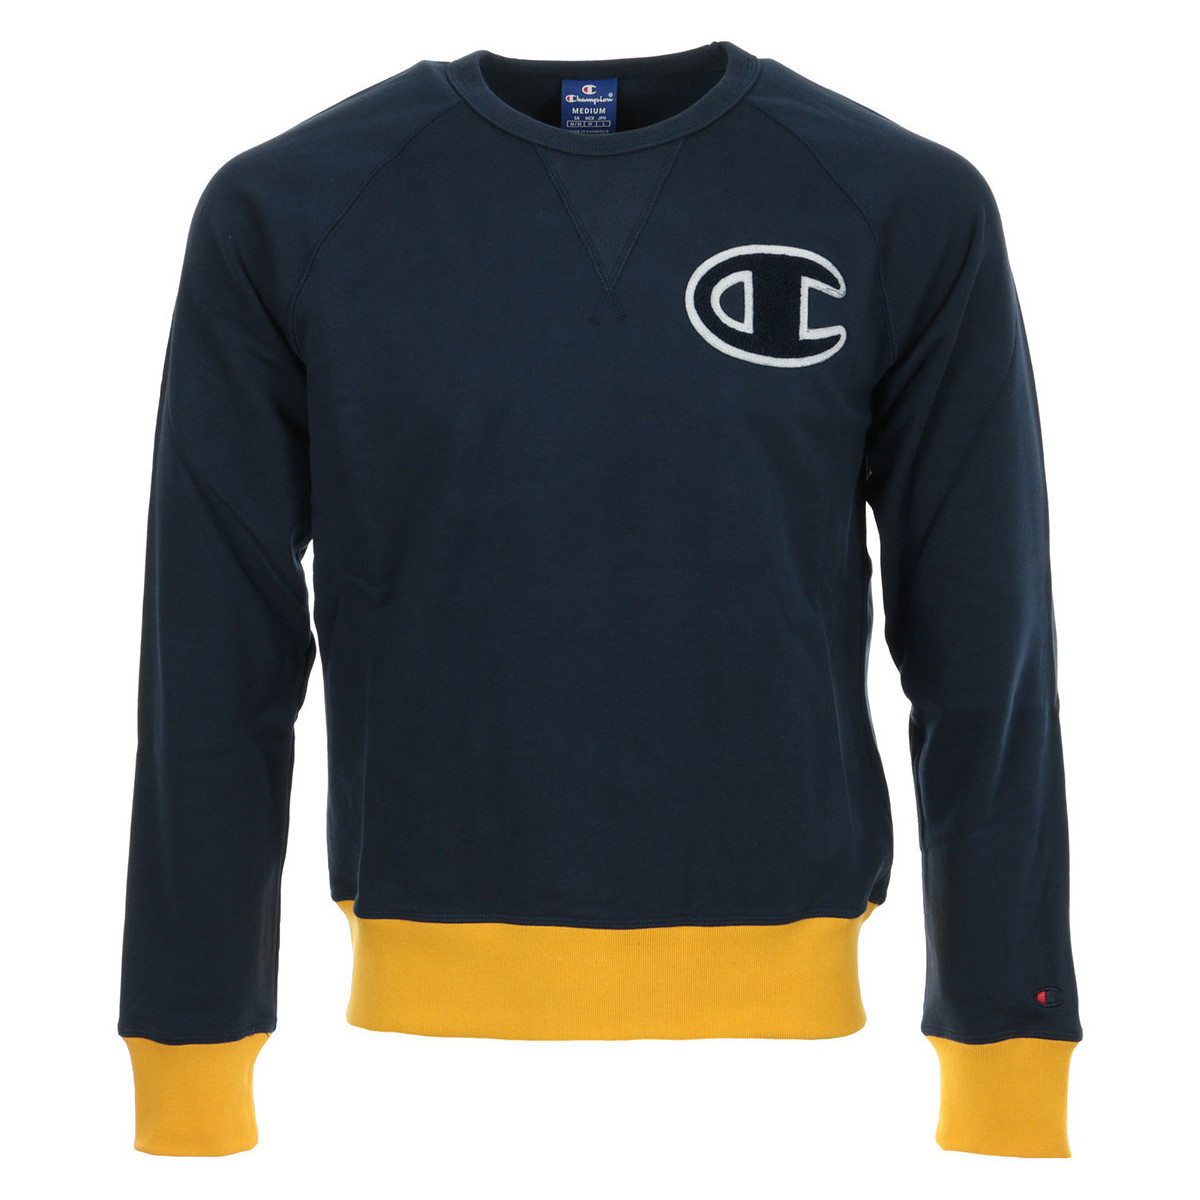 textil Hombre Sudaderas Champion Crewneck Sweatshirt Azul